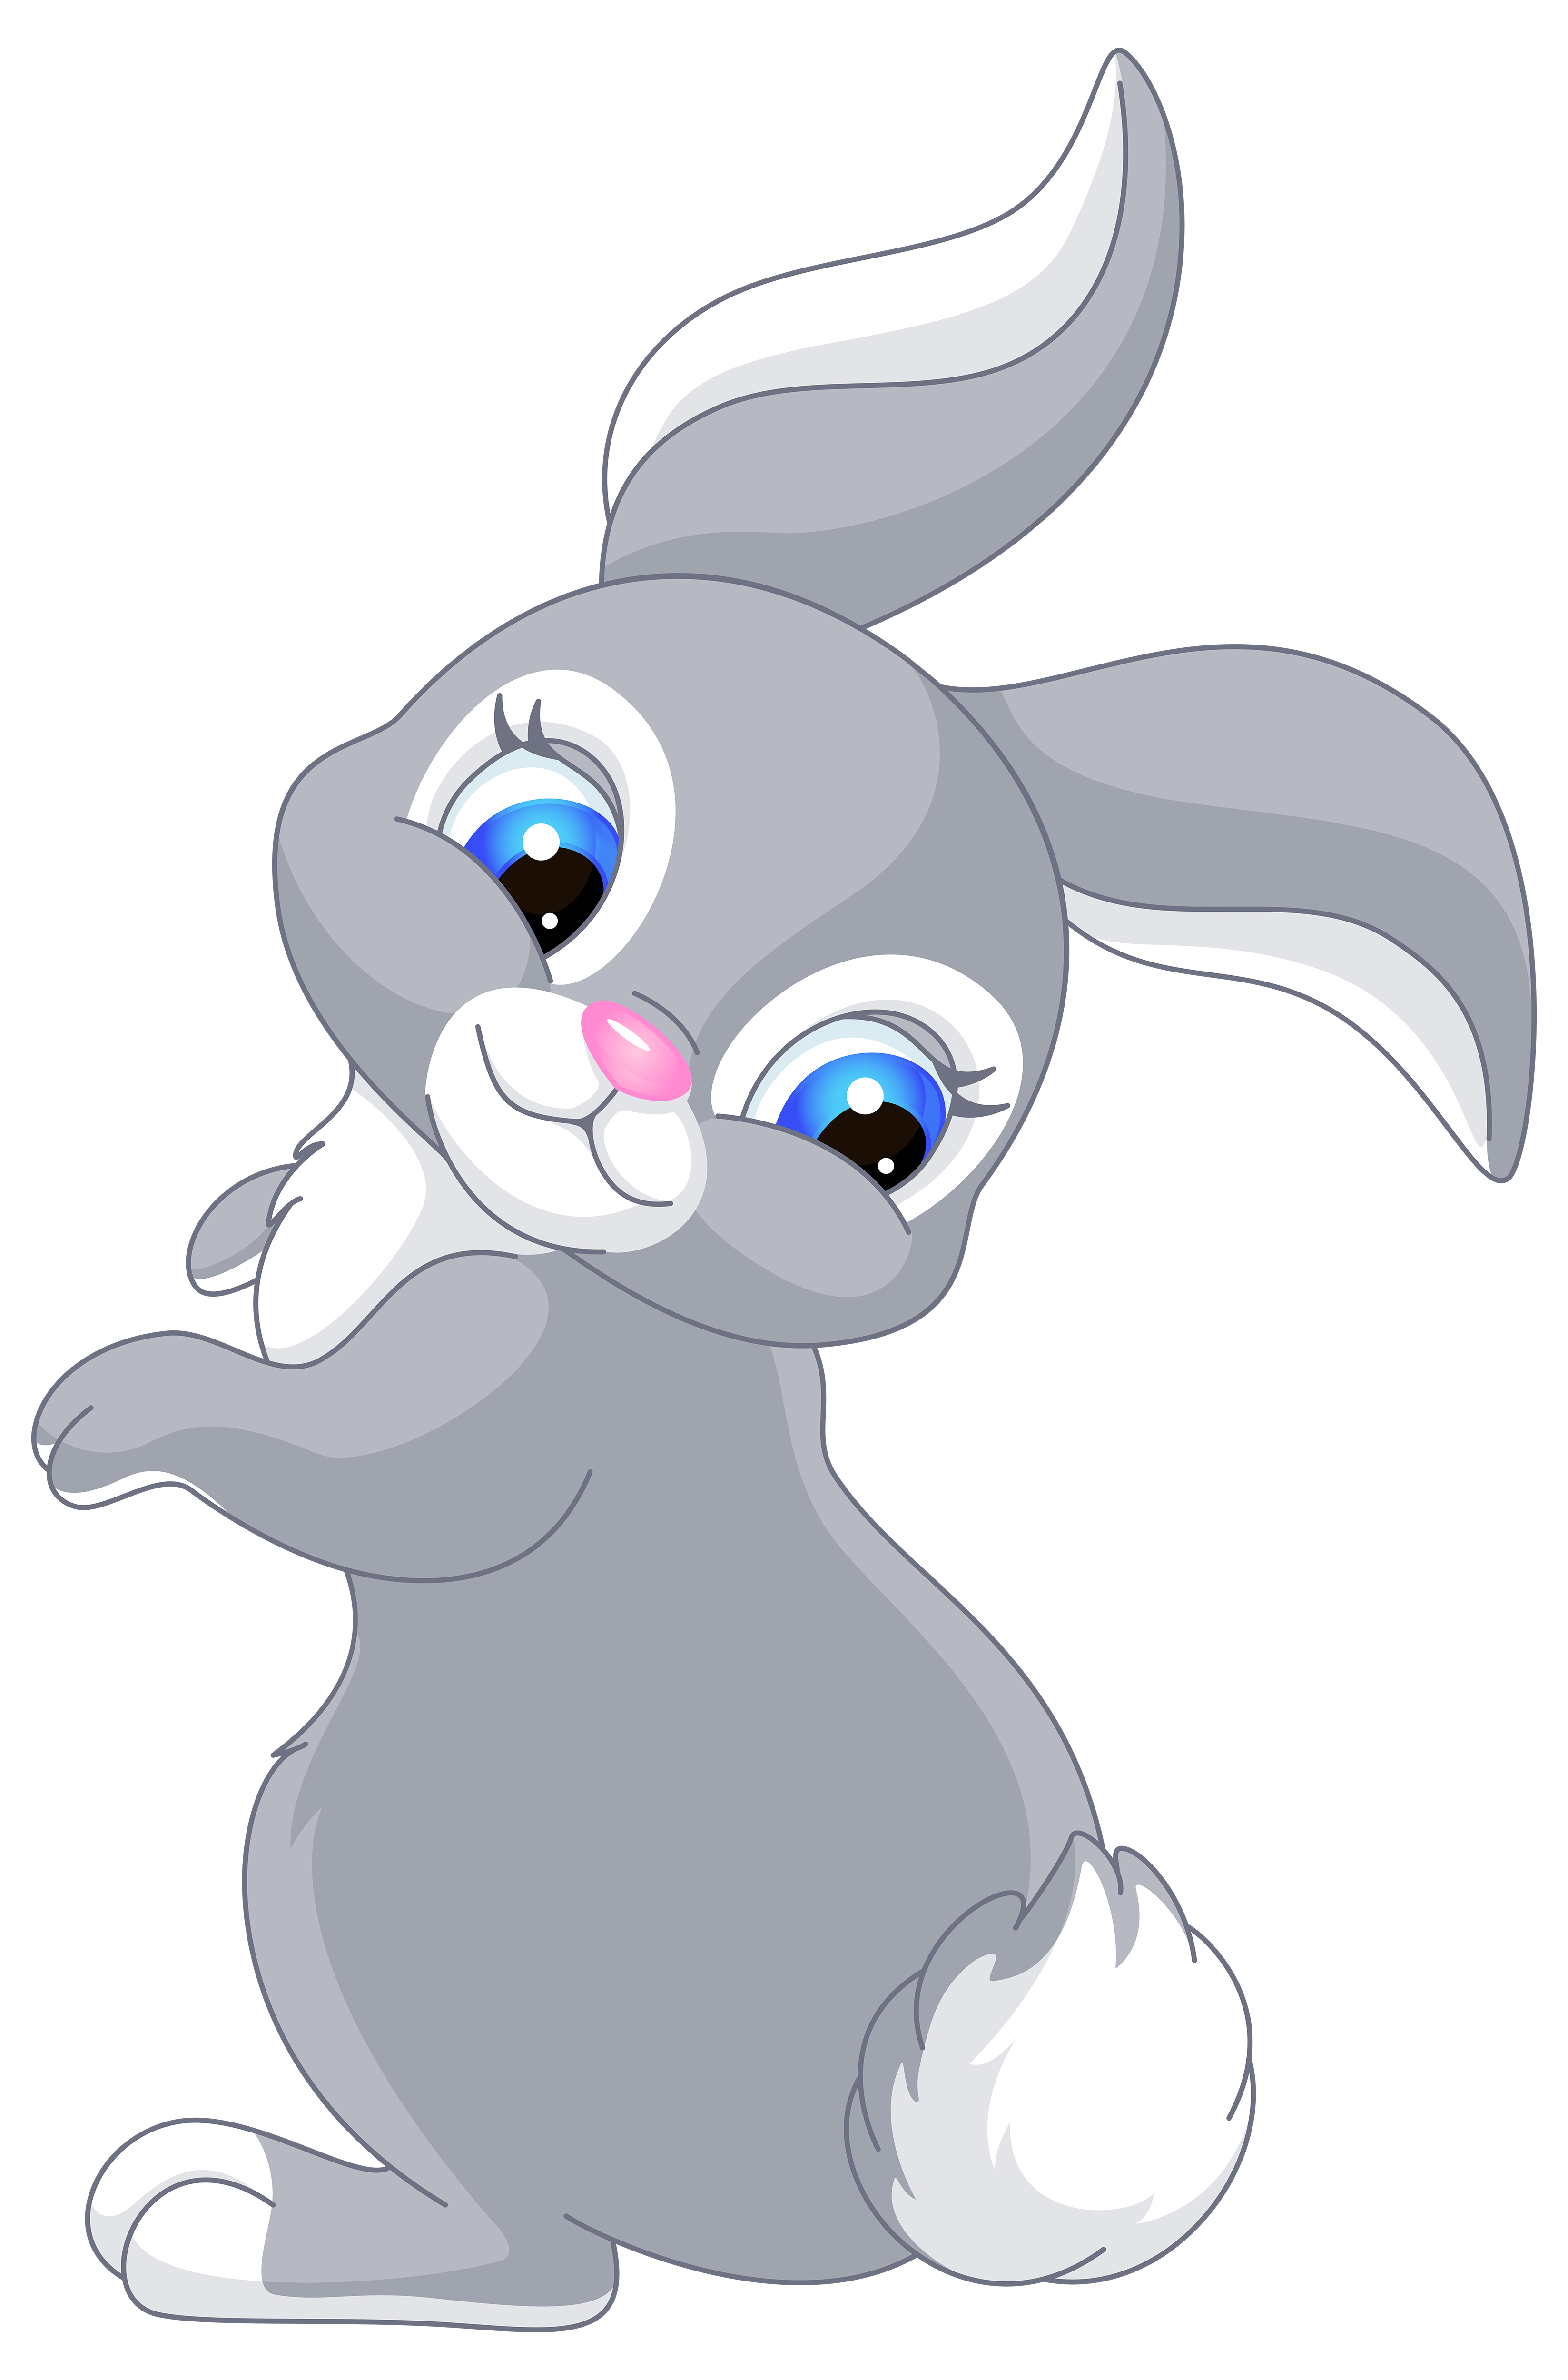 Anime Yandere rabbit girl by ShinoCsp on DeviantArt